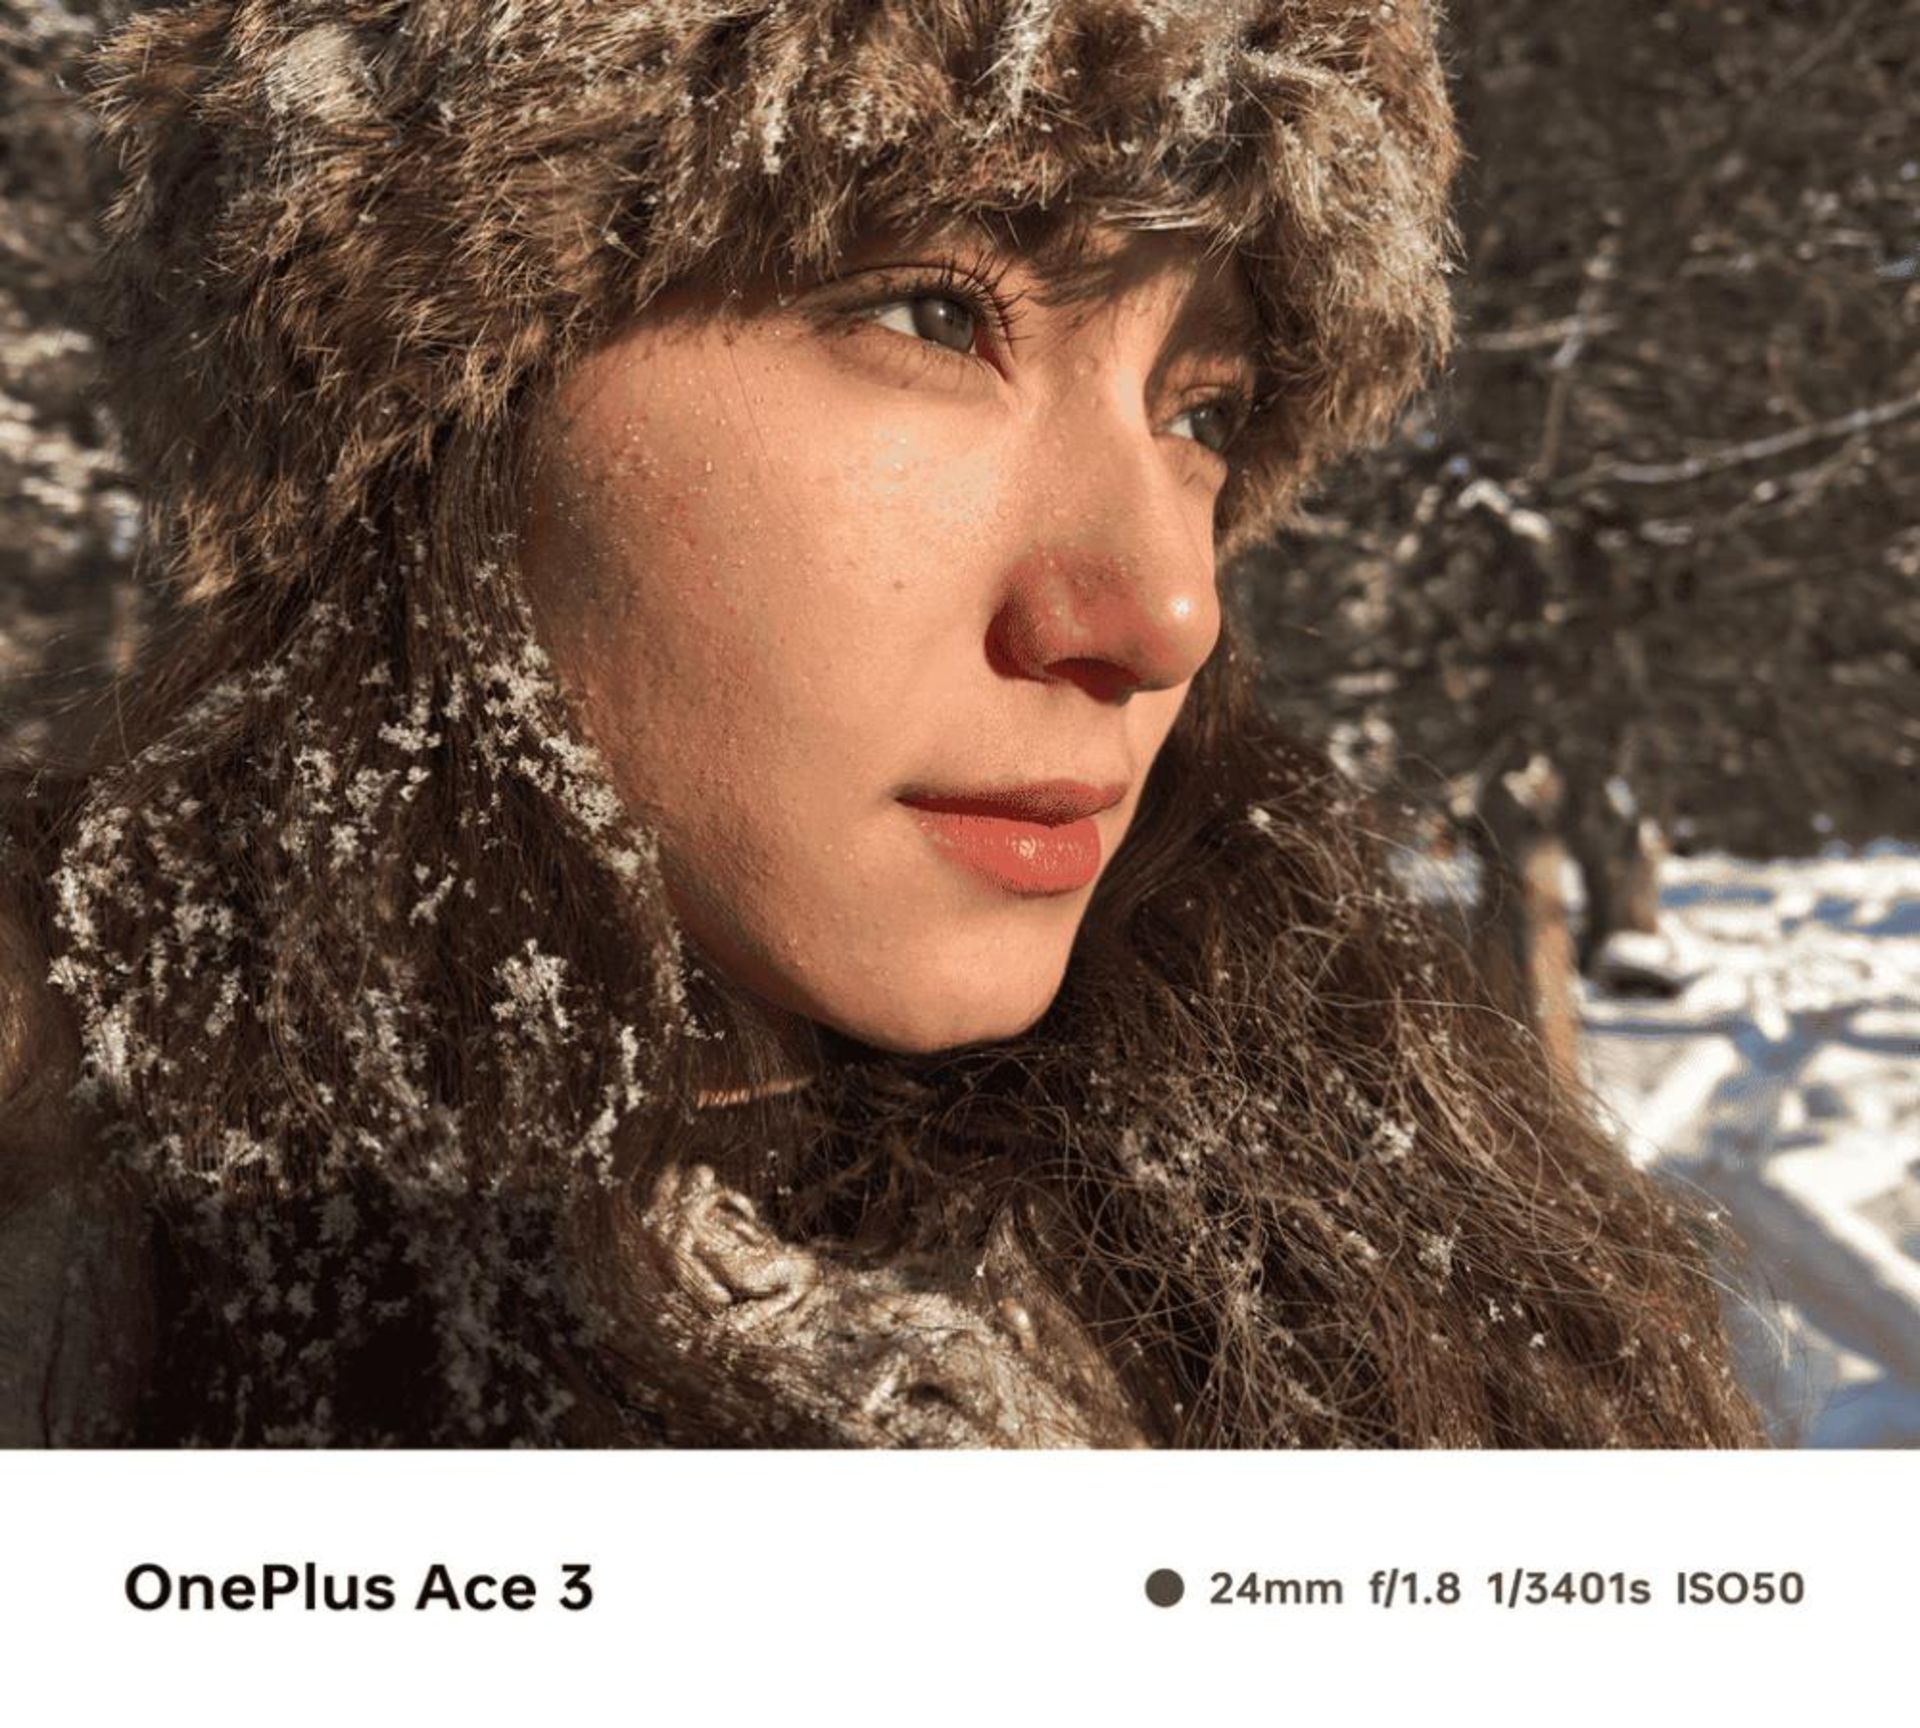 نمونه تصویر یک زن در مناطق برفی ثبت شده توسط وان پلاس ایس ۳